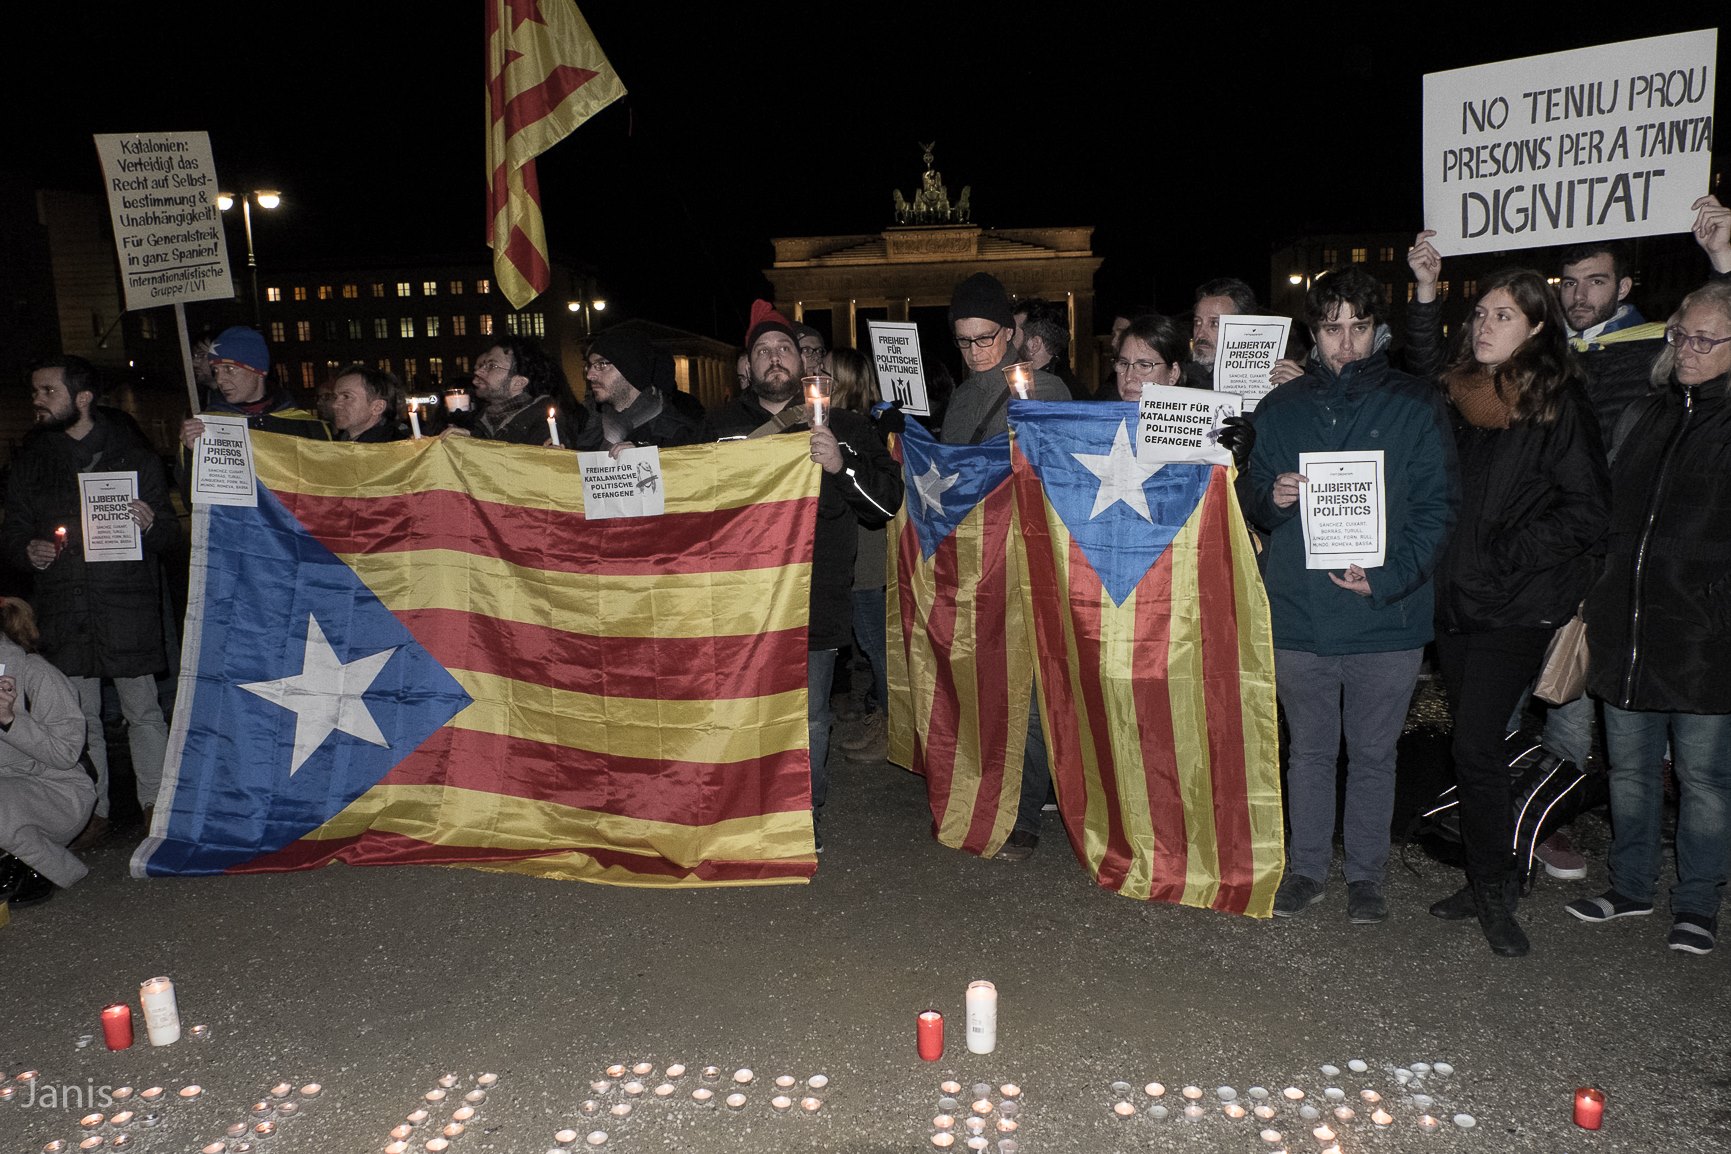 Von Berlin nach Barcelona: Freiheit für die politischen Gefangenen! [mit Bildern und Video]